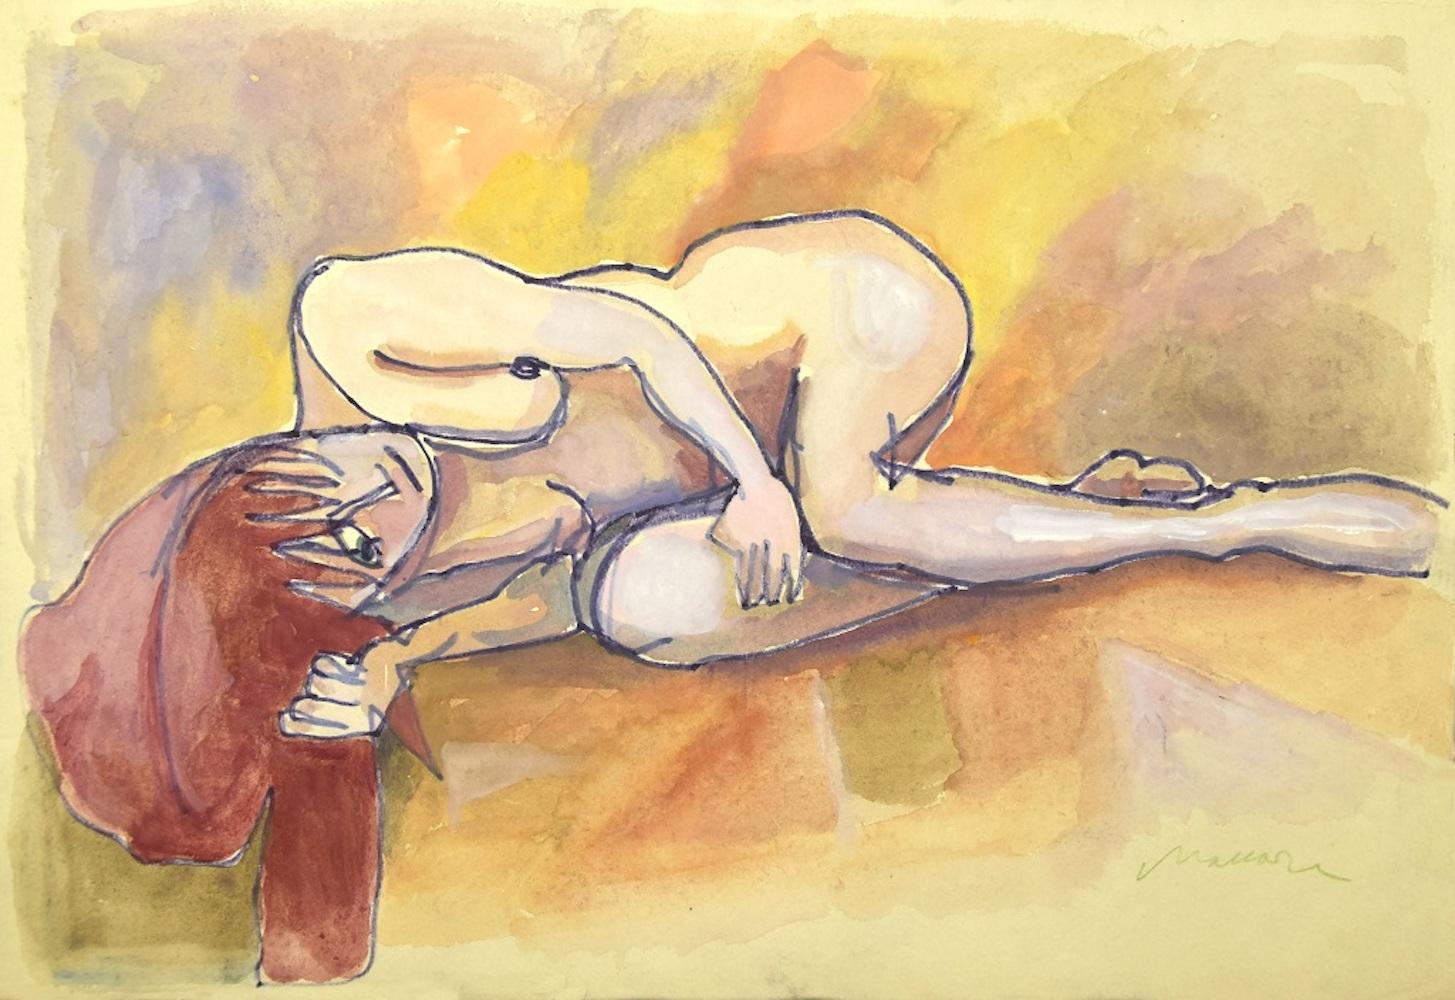 Der liegende Akt ist ein Originalkunstwerk von Mino Maccari aus den 1960er Jahren.

Farbige Zeichnung in Mischtechnik (Tusche und Aquarell) auf Papier. 

Handsigniert mit Bleistift vom Künstler am unteren Rand. 

Bis auf einige Falten an den Rändern